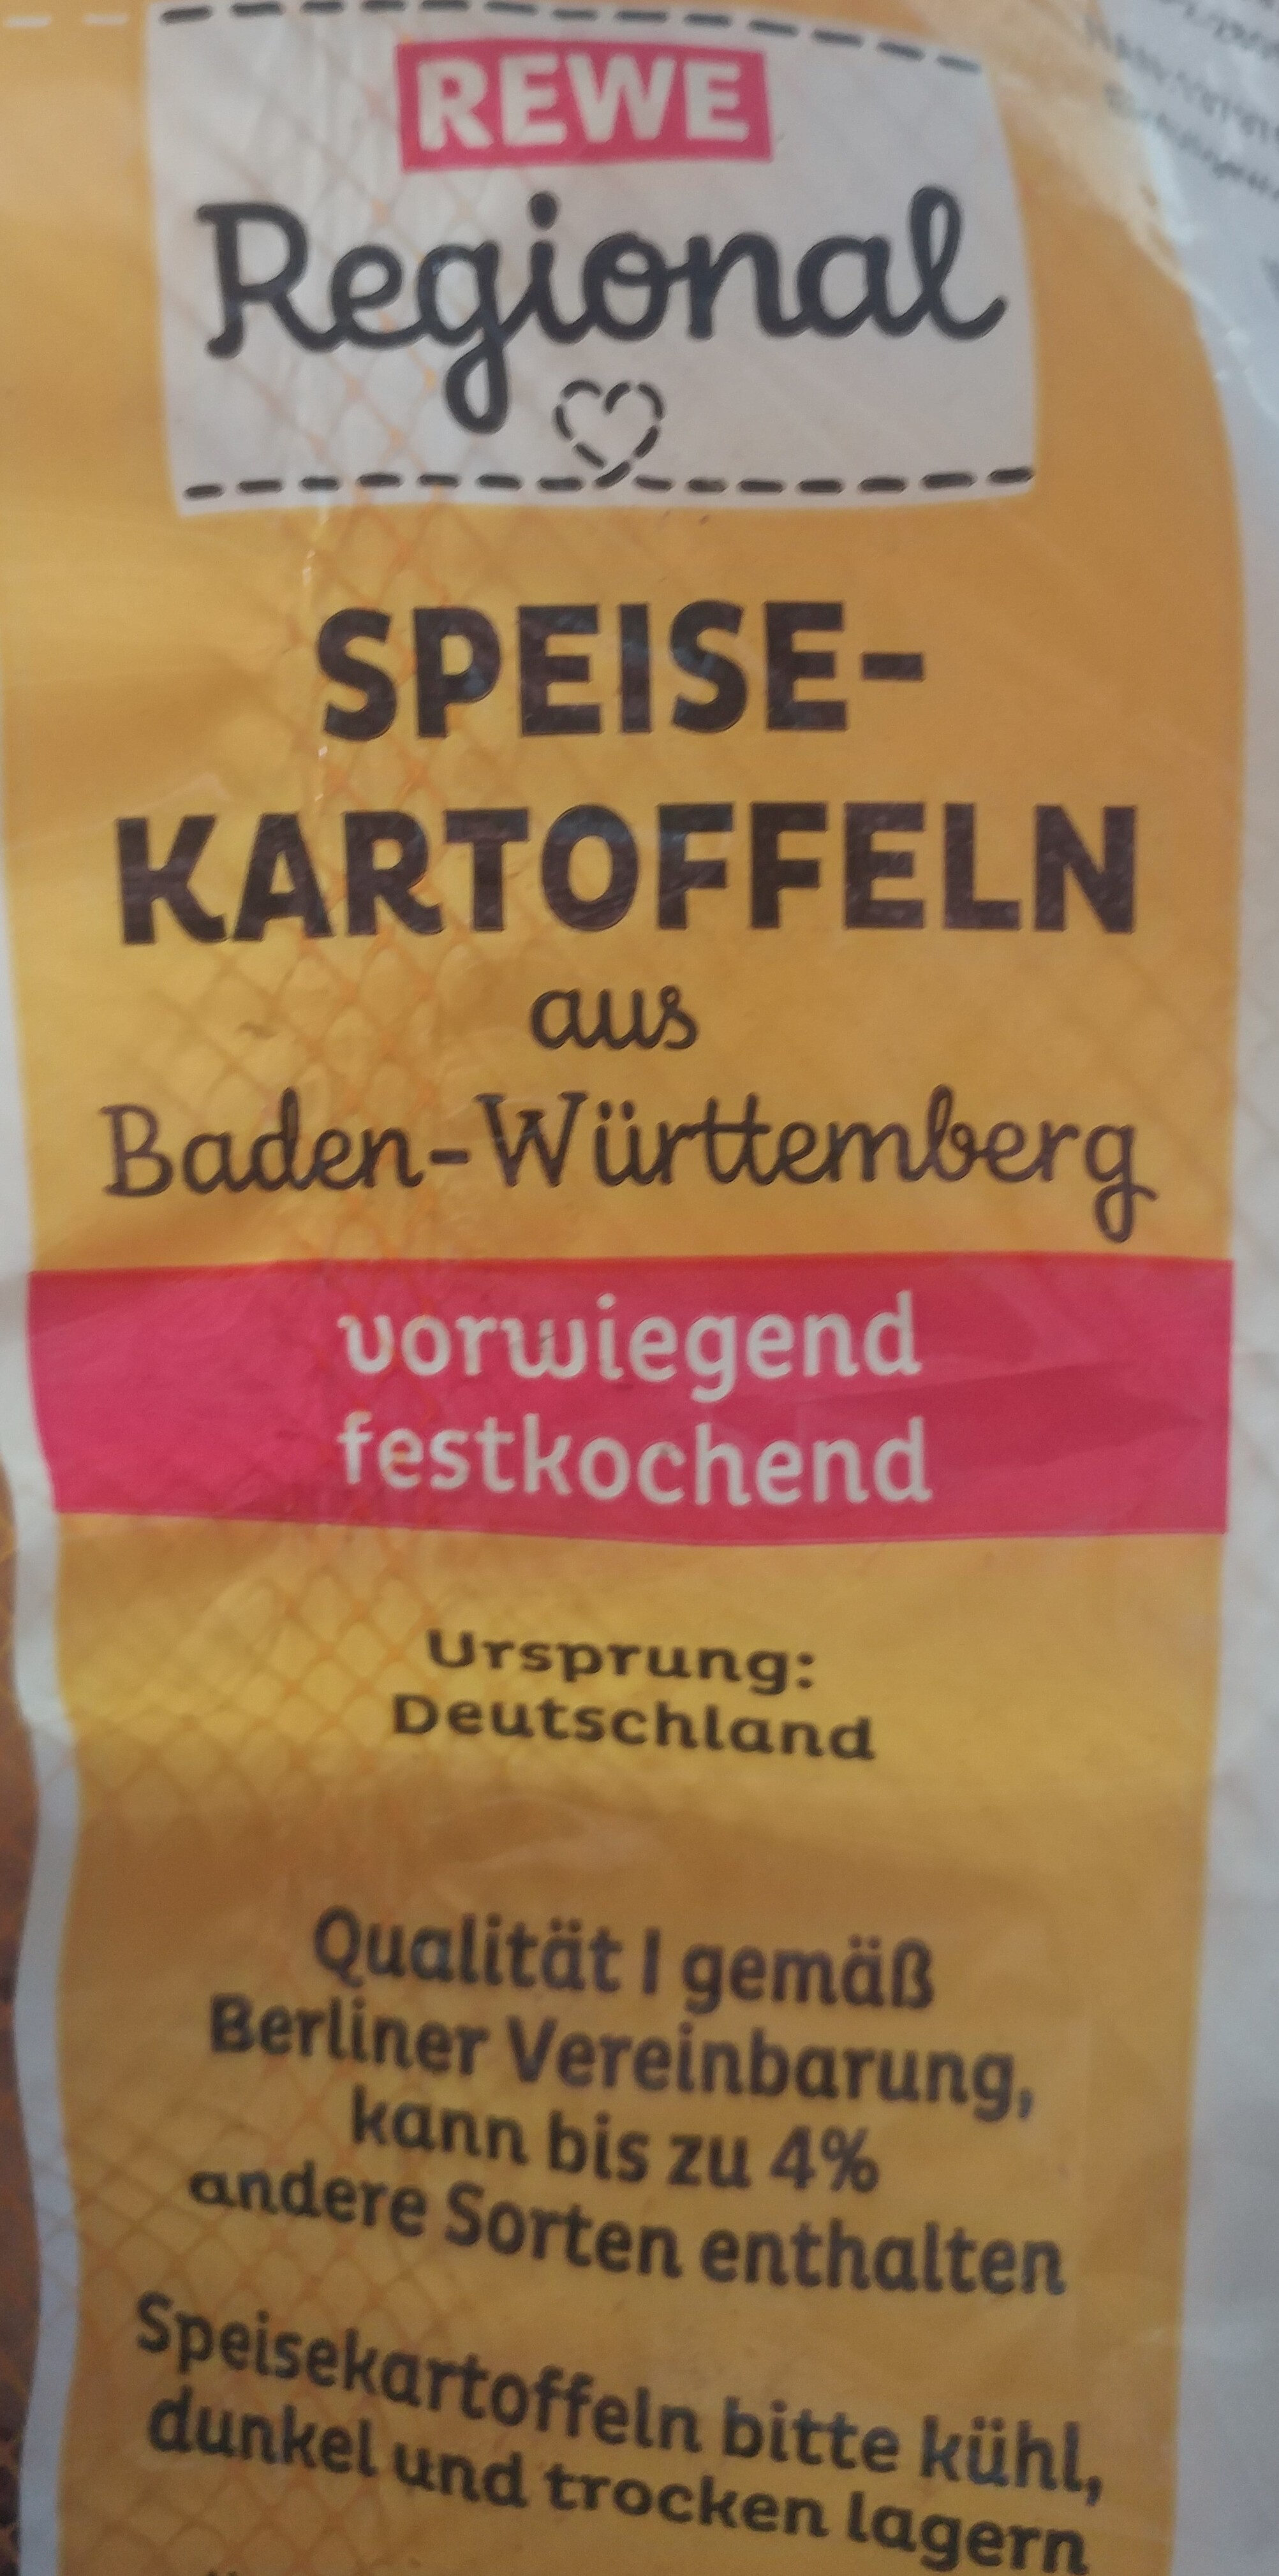 Speisekartoffeln aus Baden-Württemberg - Ingredients - de